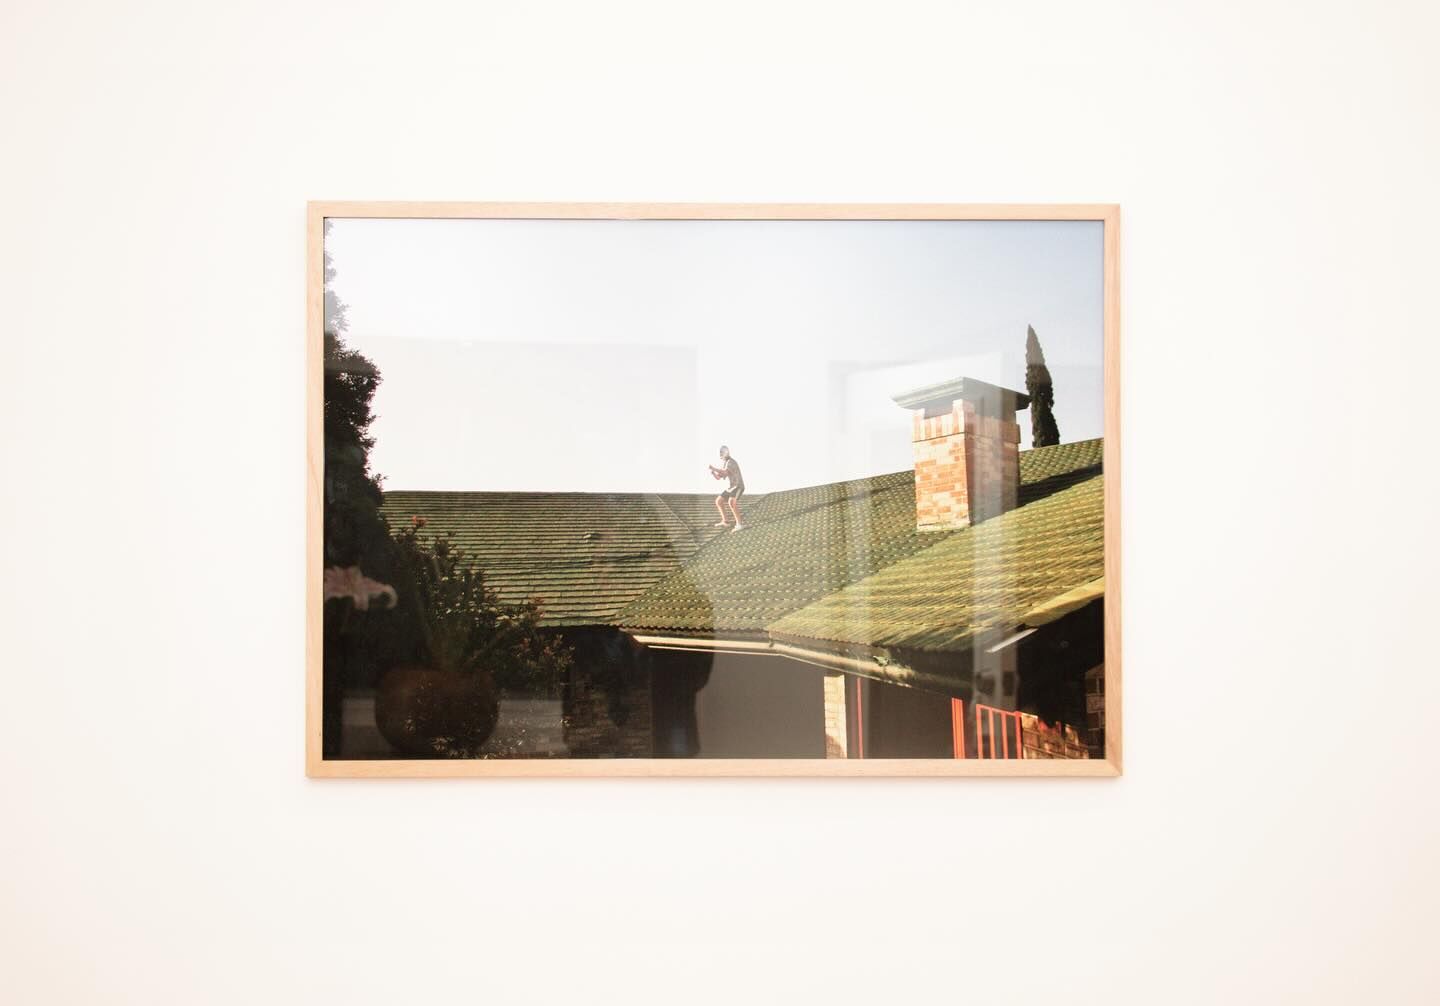 Una fotografía expuesta en una galería de arte que muestra una imagen surrealista de una persona caminando aparentemente sobre un tejado, mezclando la realidad con la imaginación artística.